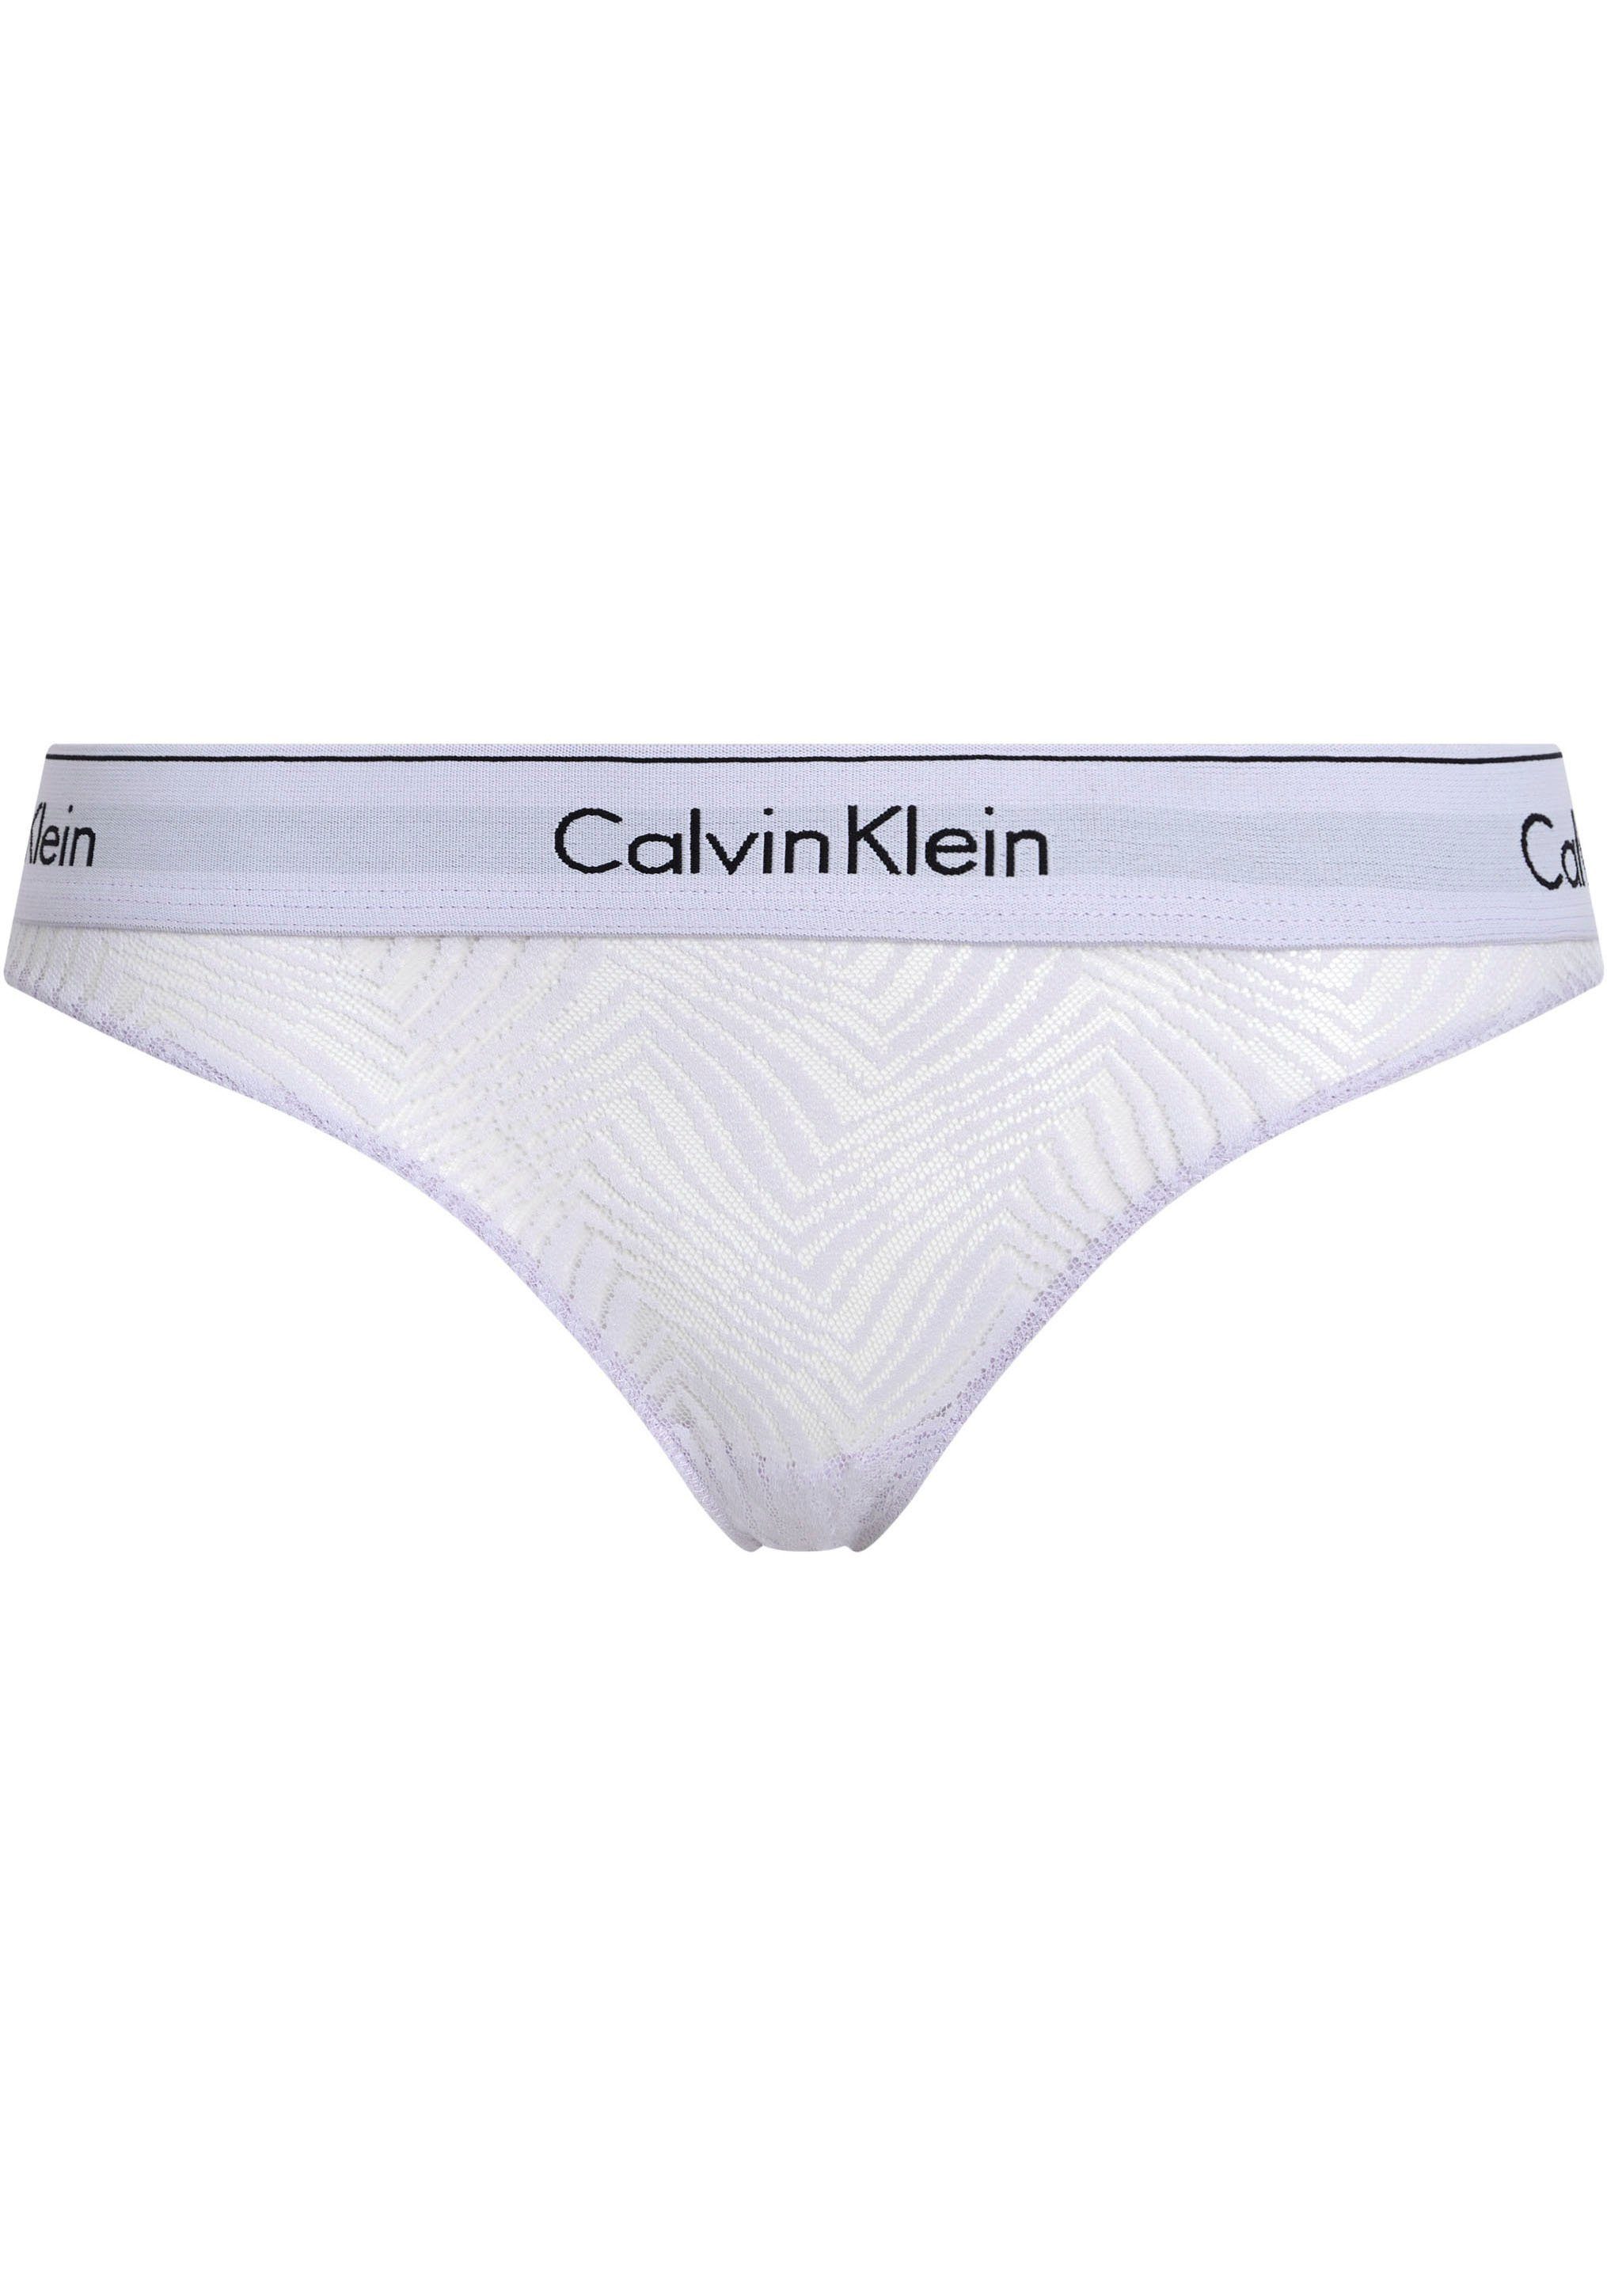 Elastischer Klein Calvin Underwear für mit ultimativen Strukturmuster, BIKINI Bund Bikinislip Tragekomfort